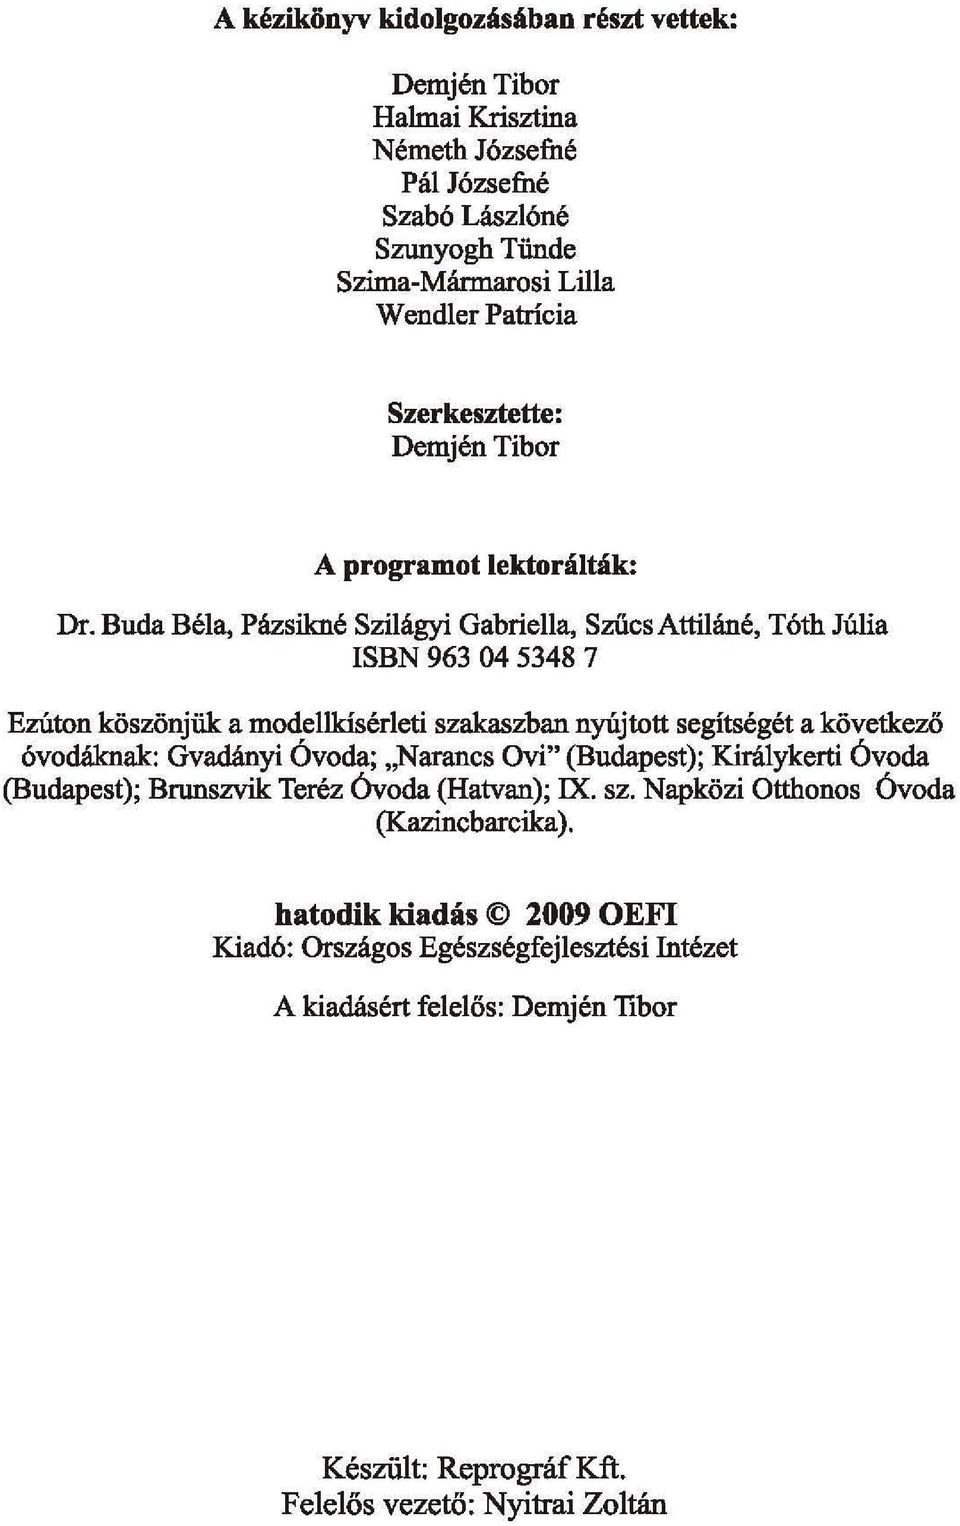 Buda Béla, Pázsikné Szilágyi Gabriella, Szűcs Attiláné, Tóth Júlia ISBN 963 04 5348 7 Ezúton köszönjük a modellkísérleti szakaszban nyújtott segítségét a következő óvodáknak: